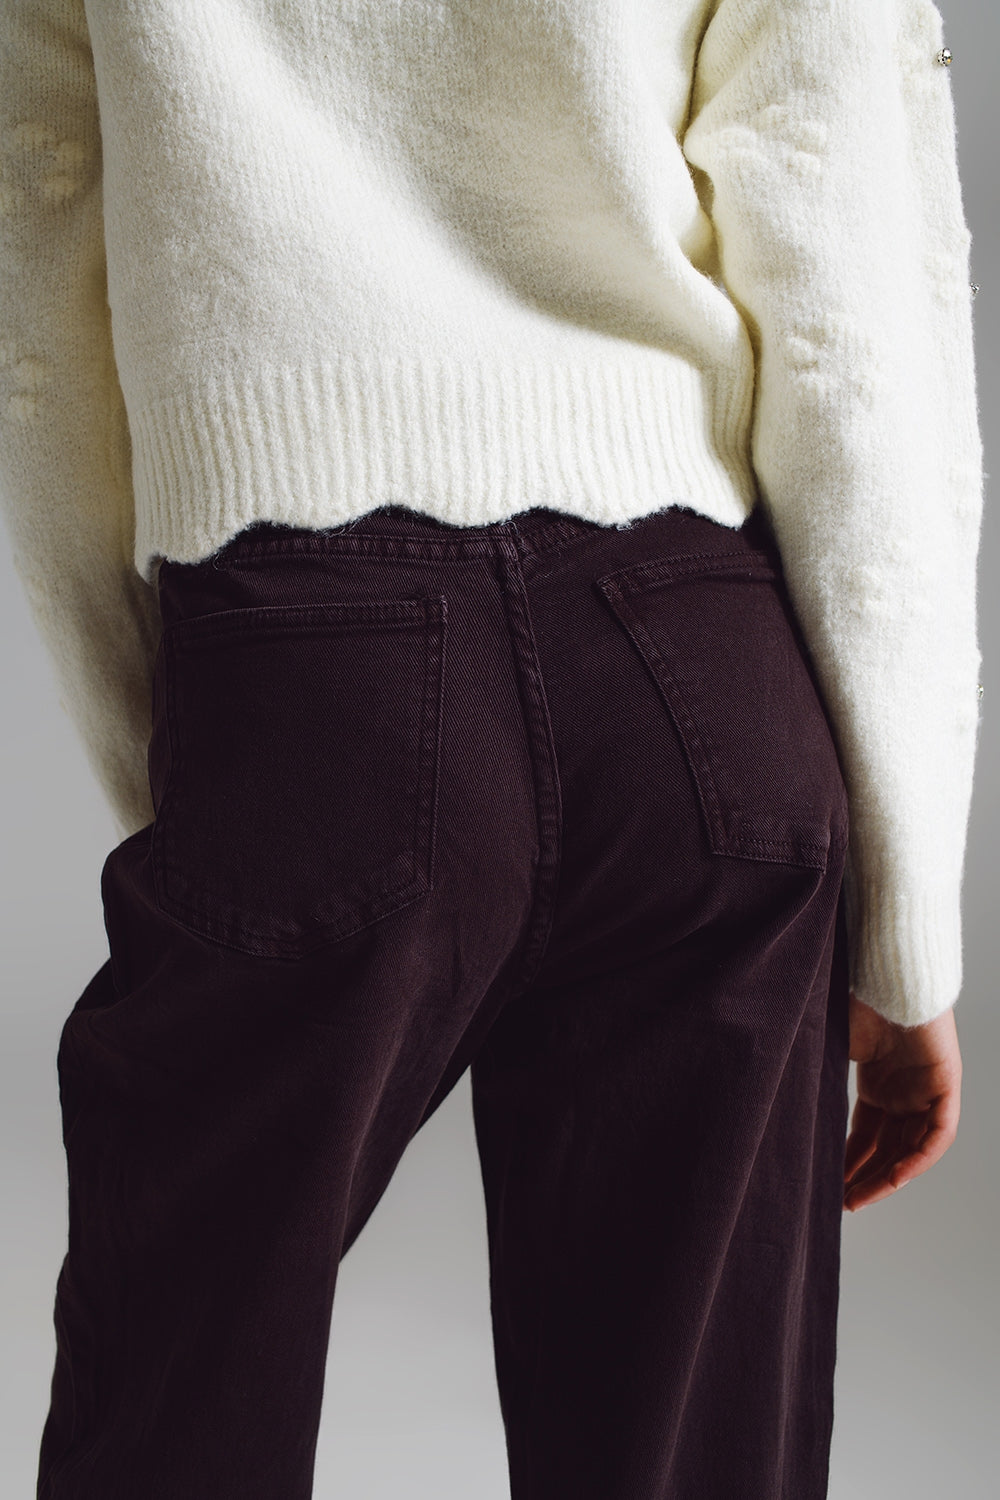 Pantaloni marroni rilassati con dettaglio tasca in vita.